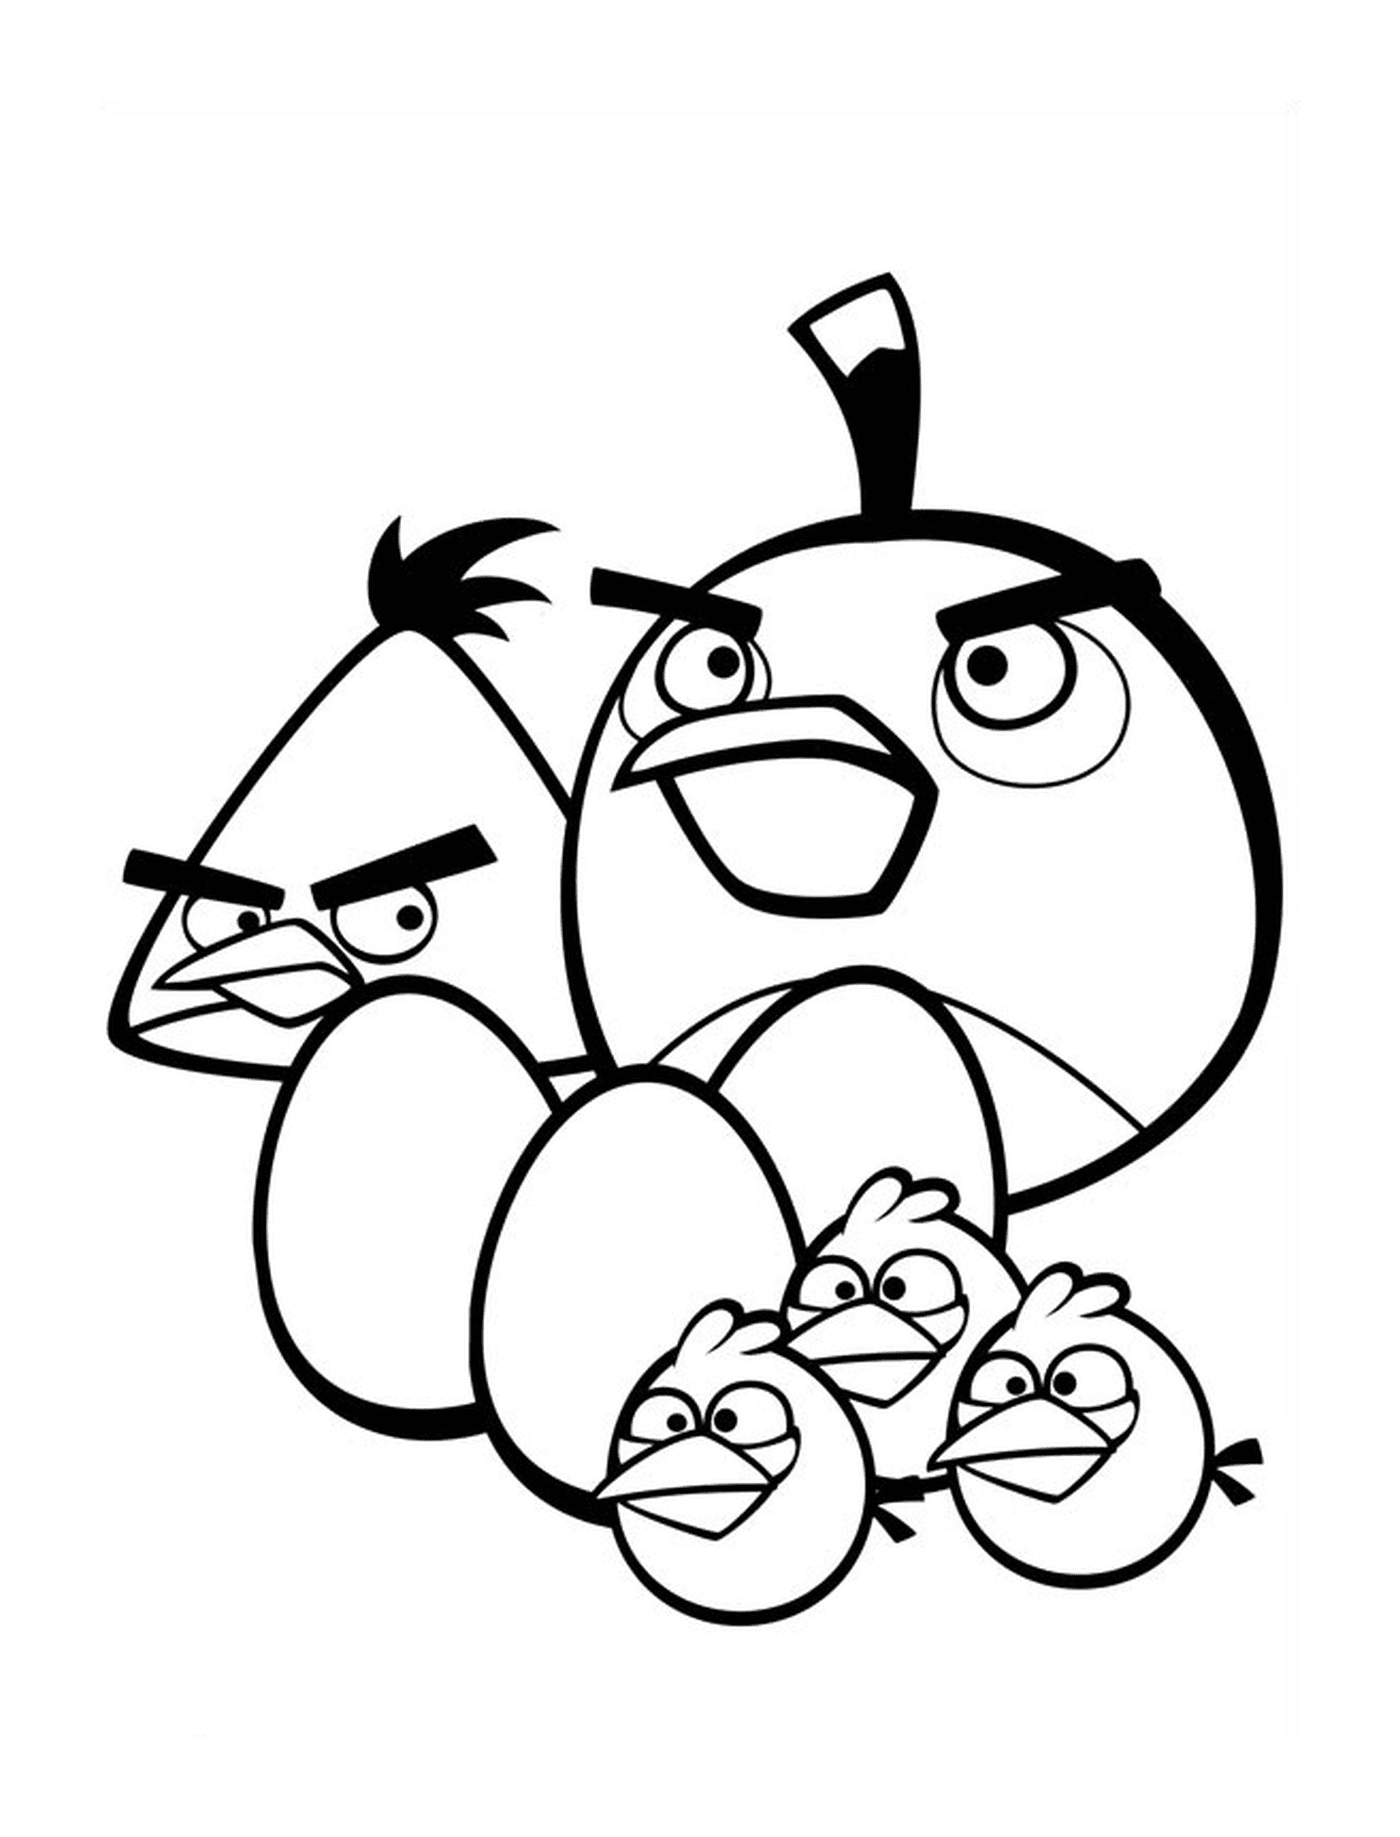  Angry Birds - Kleine Familie von Vögeln 